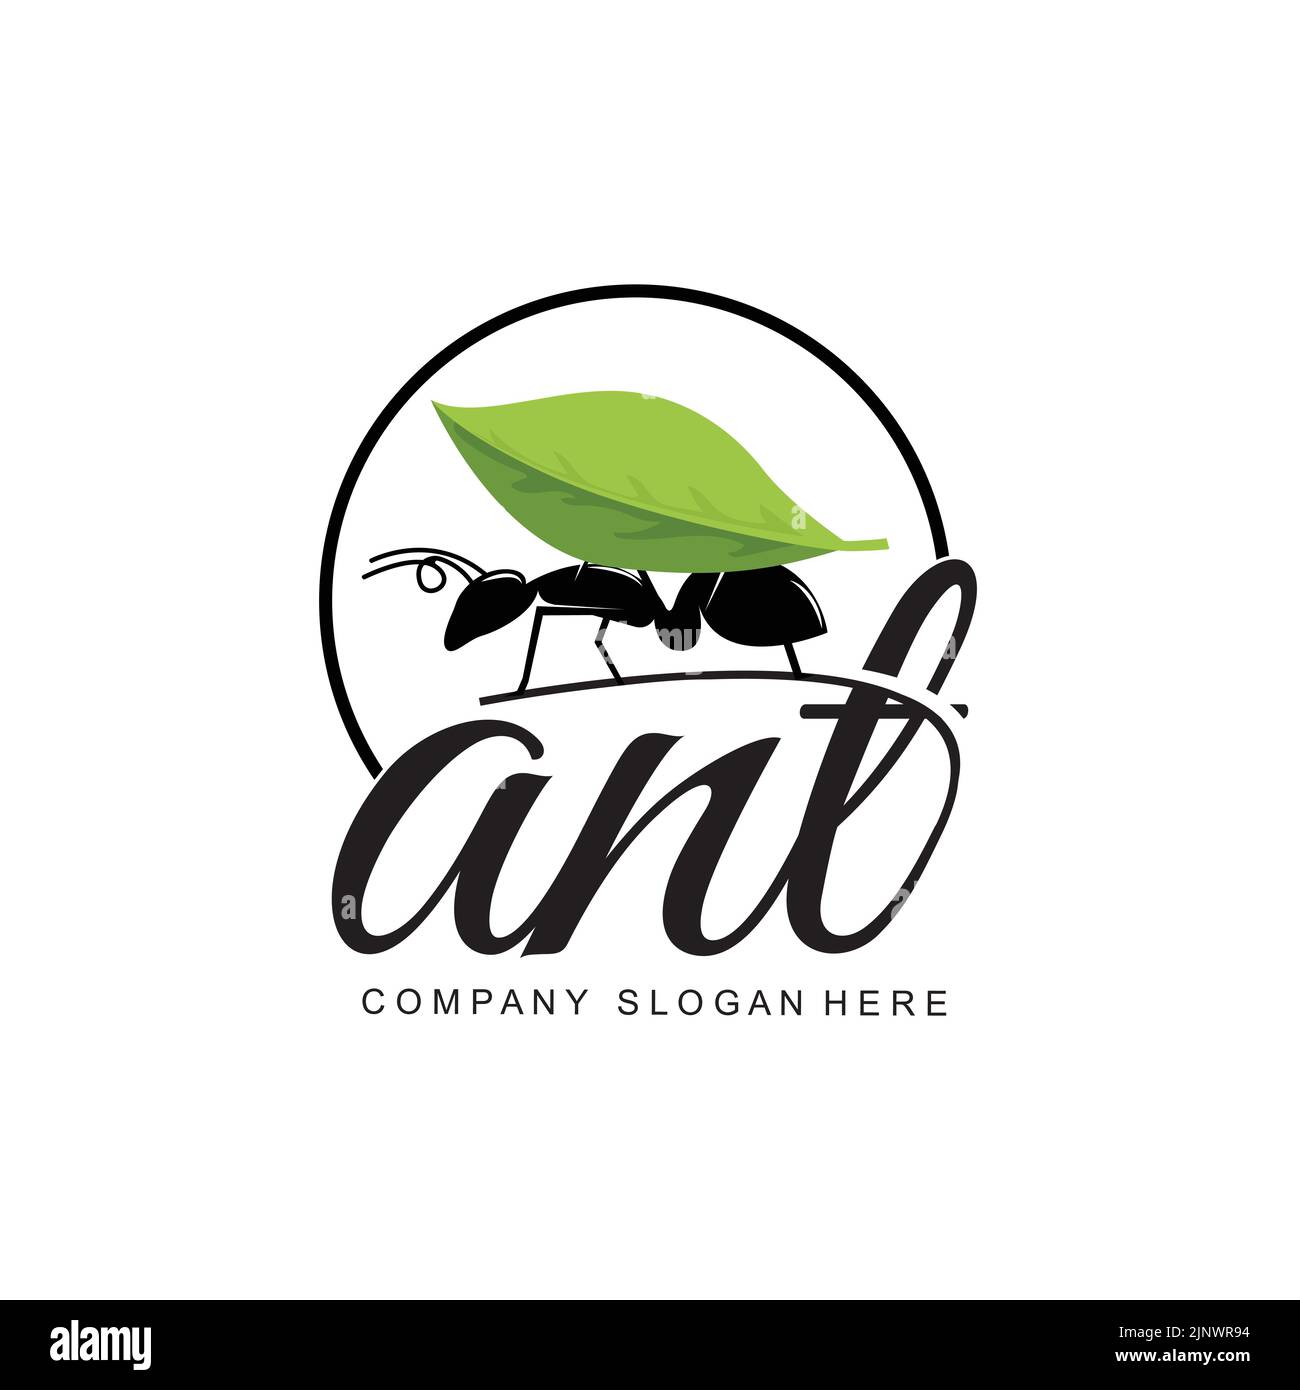 Disegno del logo ANT, disegno vettoriale del gruppo e degli animali da lavoro compatti Illustrazione Vettoriale